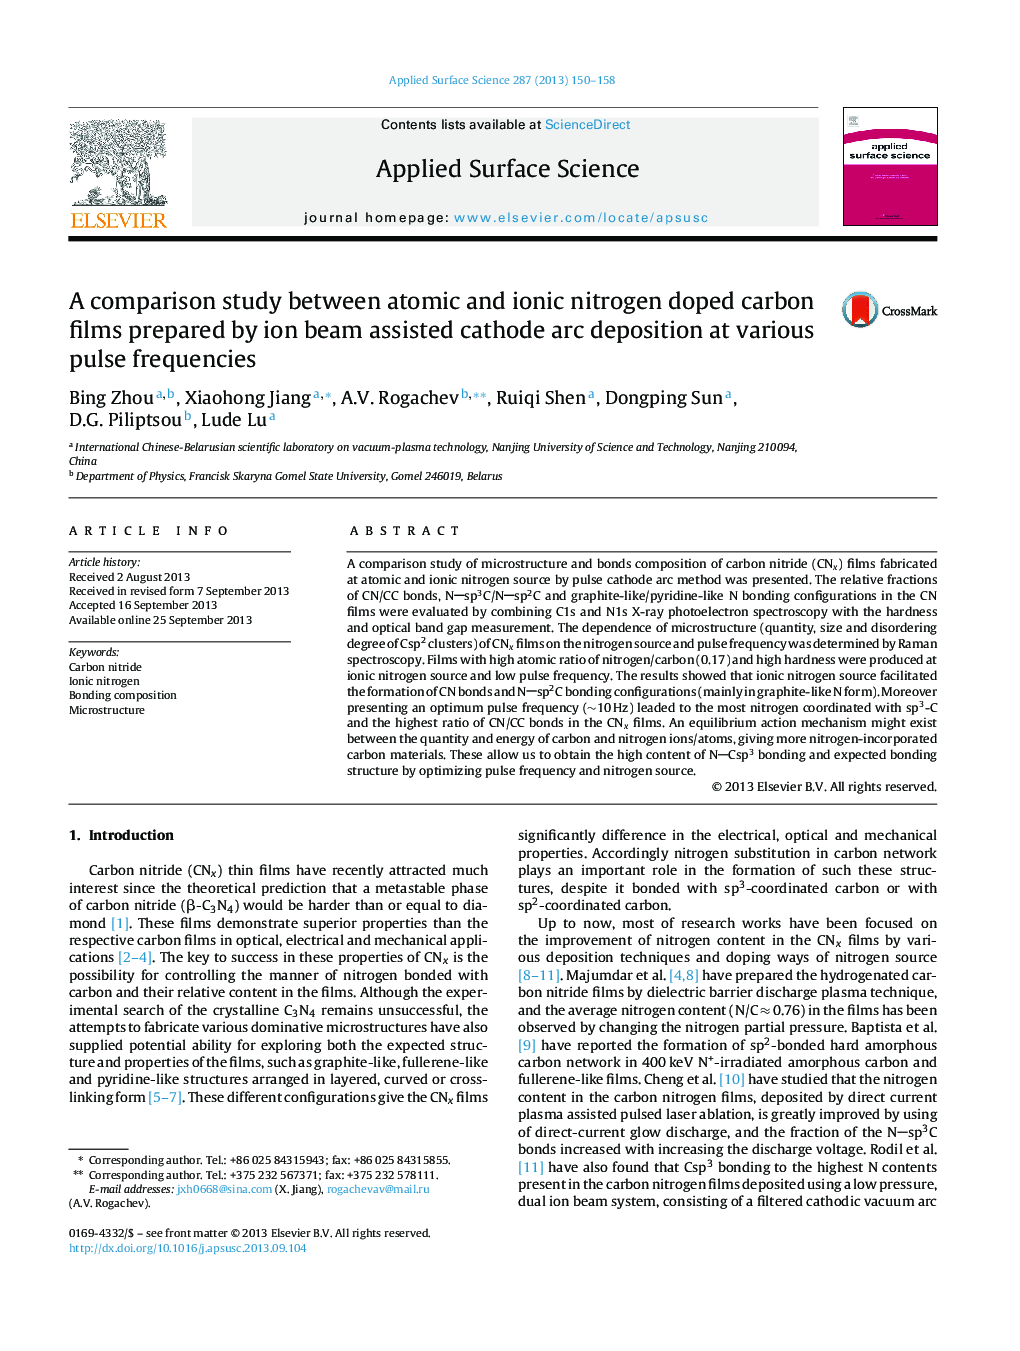 مطالعه مقایسه ای بین فلوهای کربن دوتایی اتمی و نیکوتایوژی تهیه شده توسط پرتو یون به منظور رسوب قوس کاتدی در فرکانس های مختلف پالس 